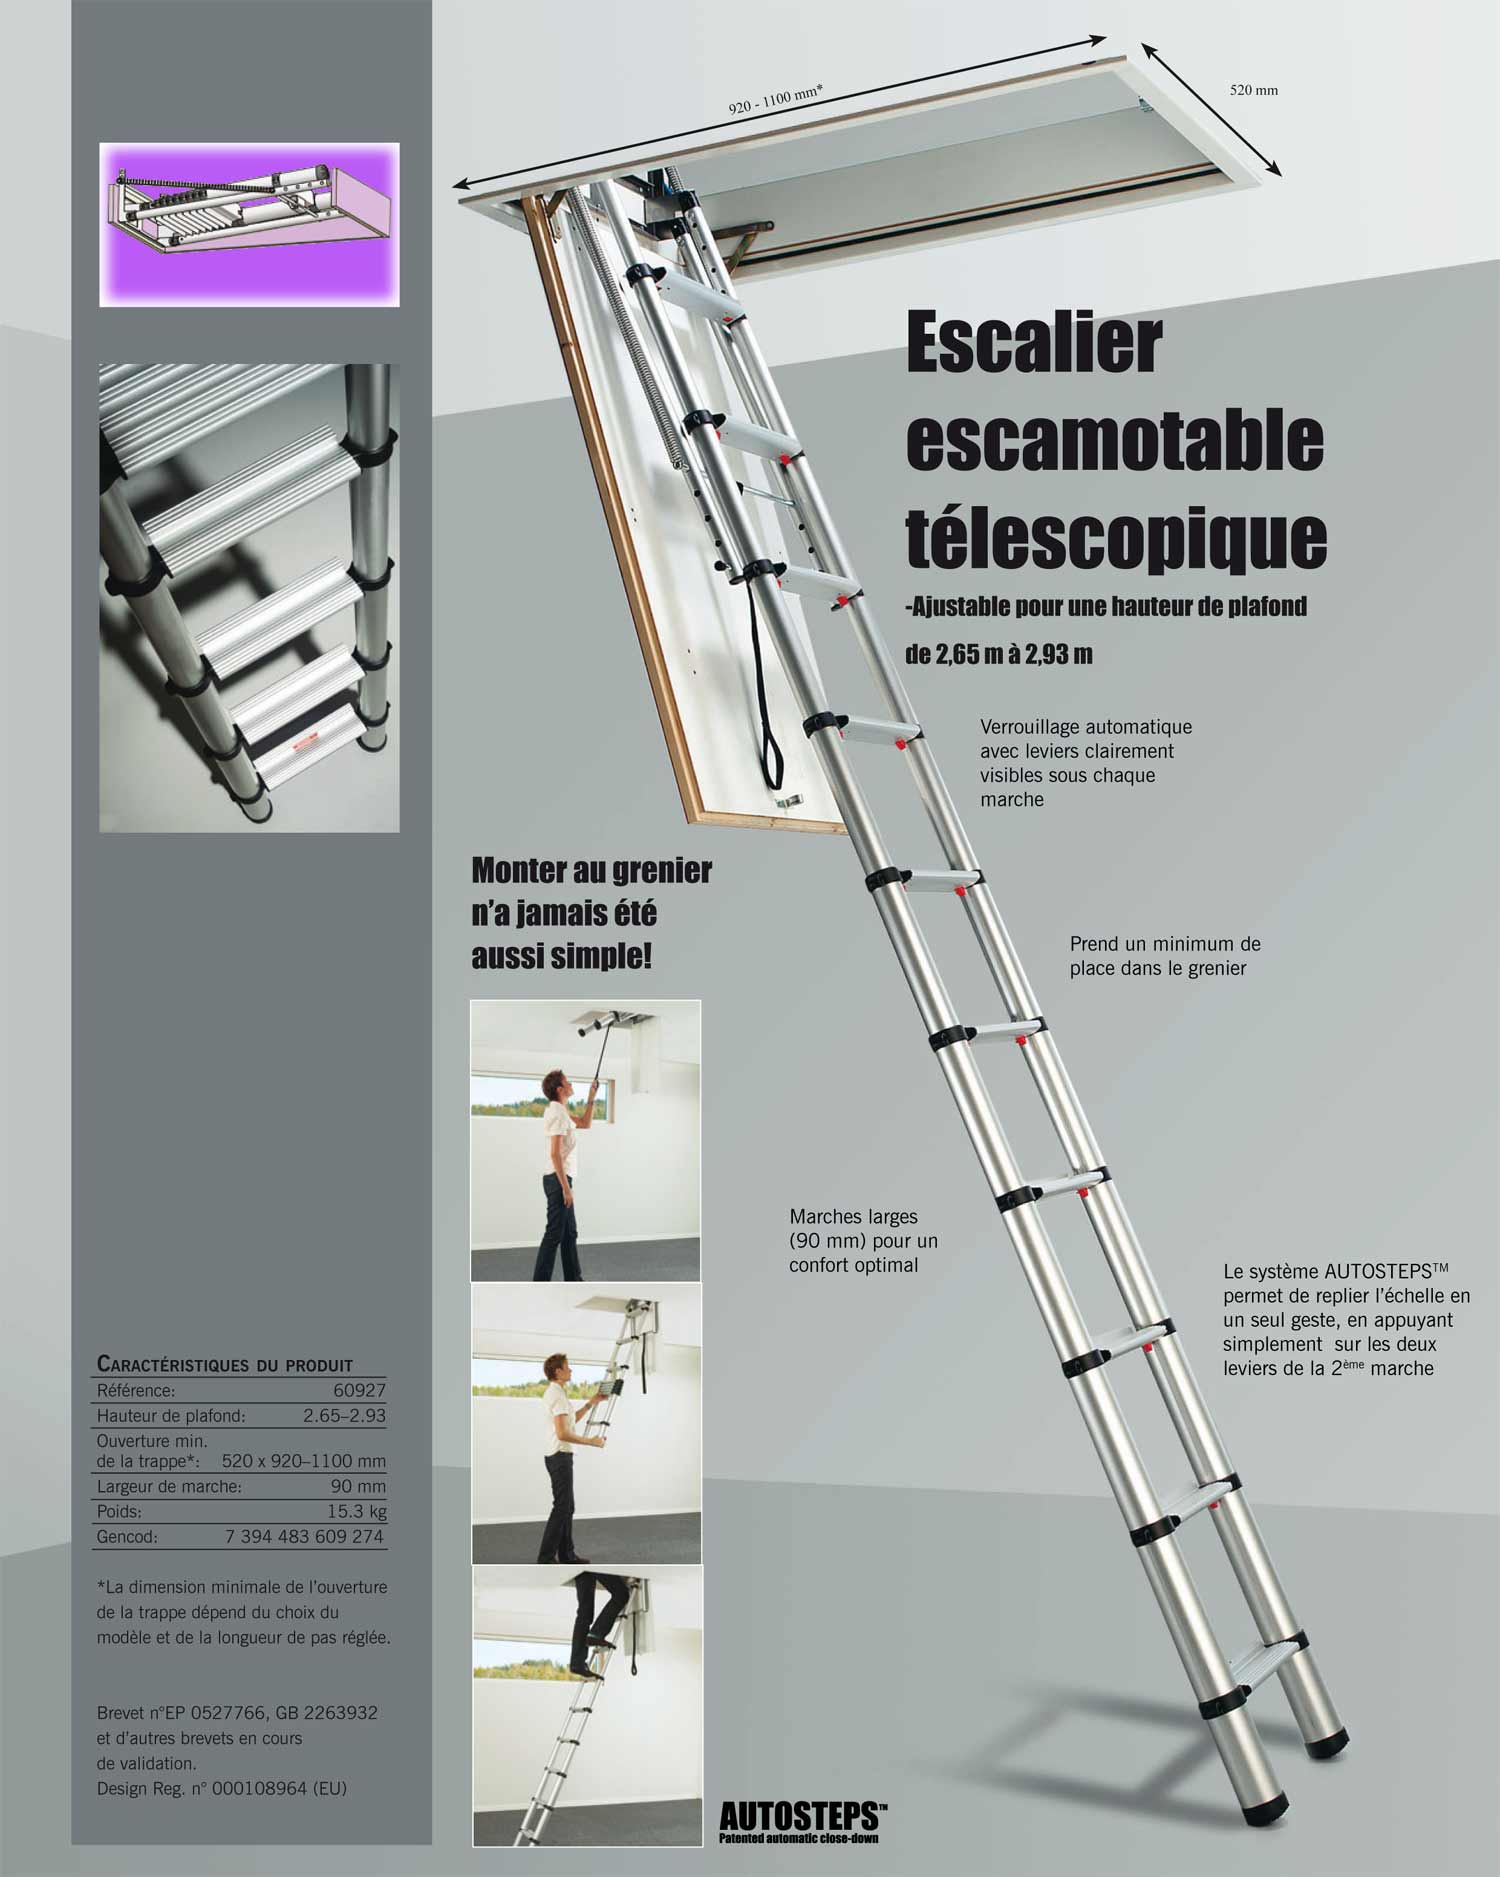 Escalier grenier infos: possibilités, matériaux et prix